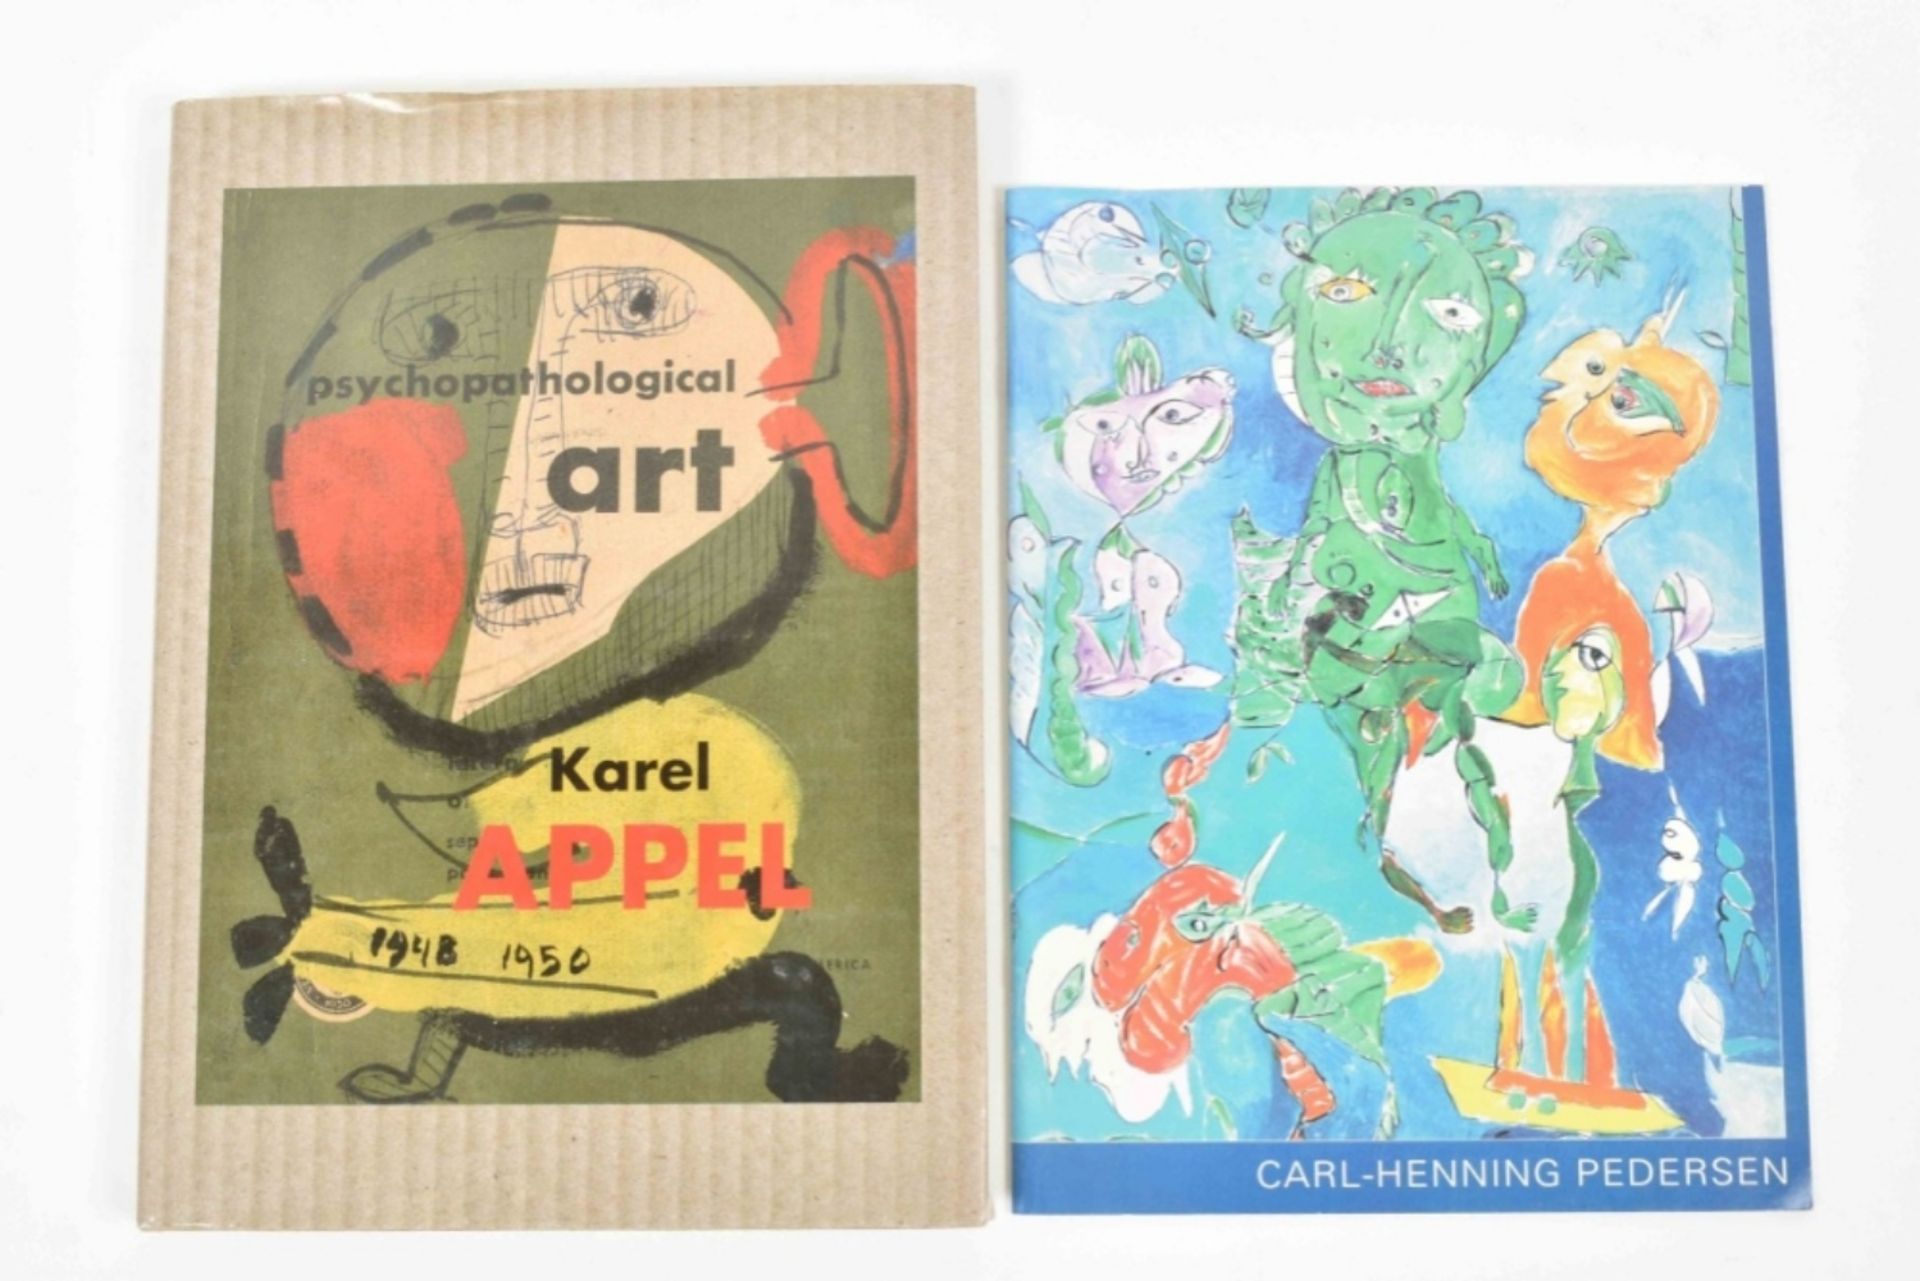 31 publications on Karel Appel and Cobra artists: Karel Appel - Image 5 of 8